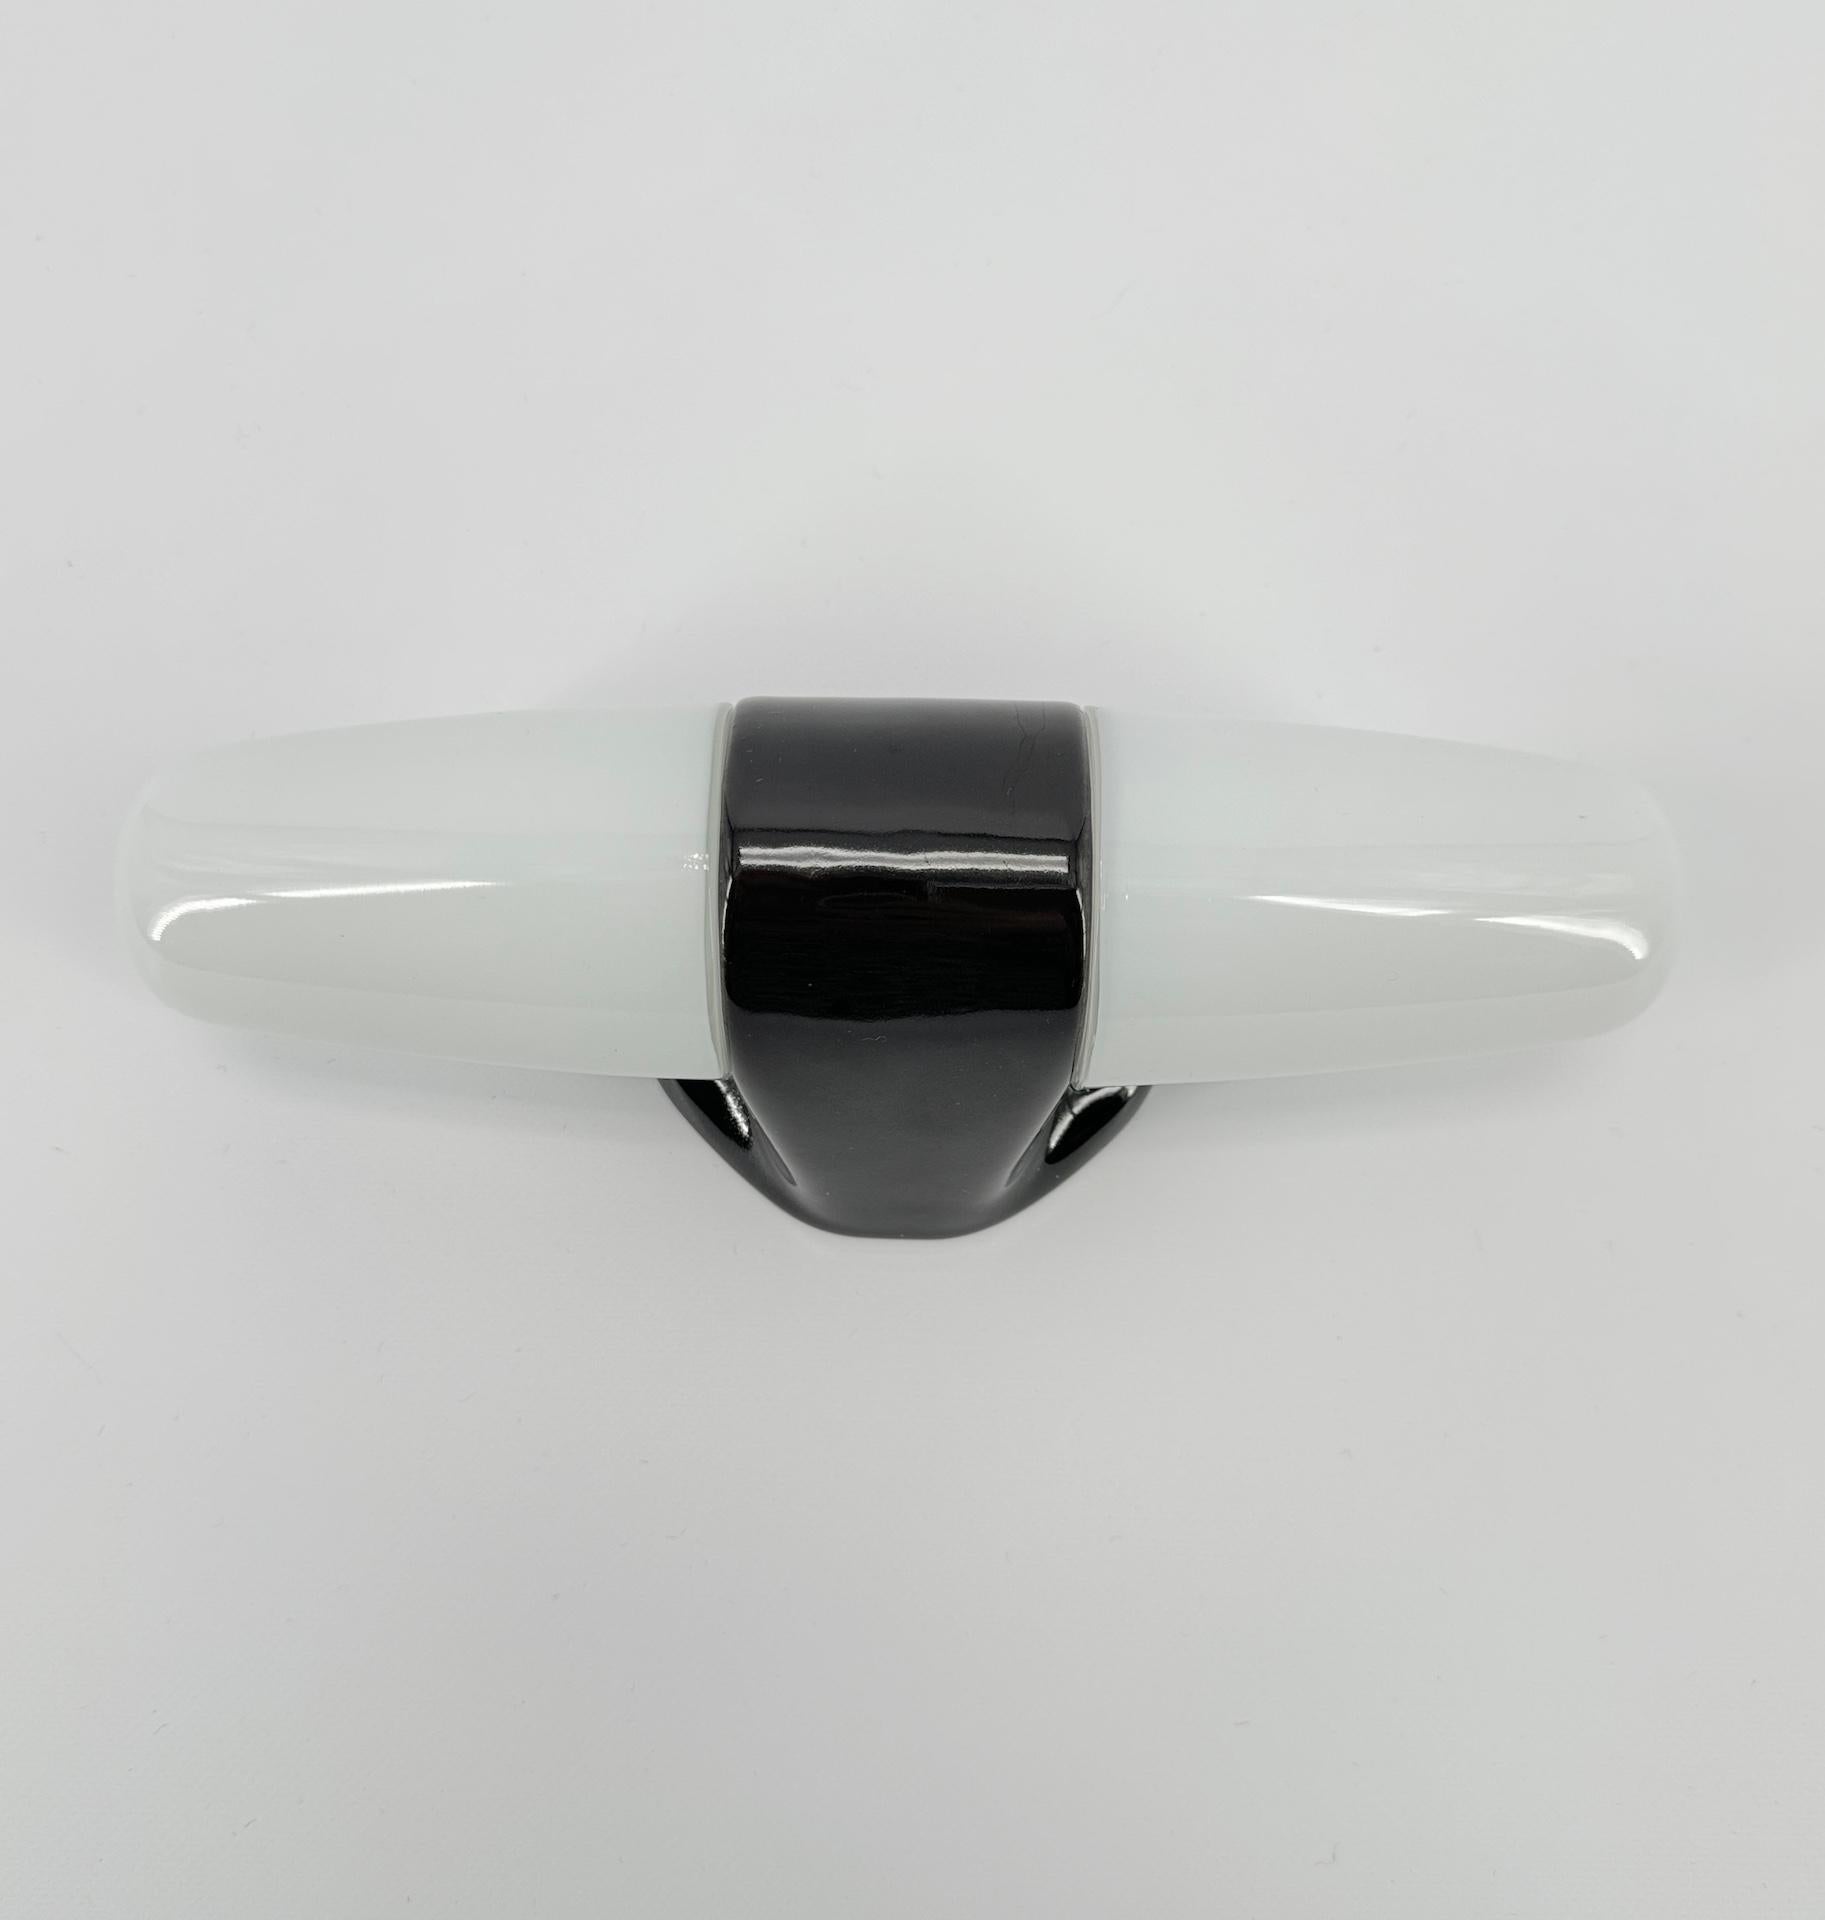 Cette applique en porcelaine blanche et abat-jour en verre opalin a été conçue par le designer allemand Wilhelm Wagenfeld, qui a étudié à l'école du Bauhaus.

Ce modèle date de 1958 et présente des lignes épurées, rondes et élégantes, un design